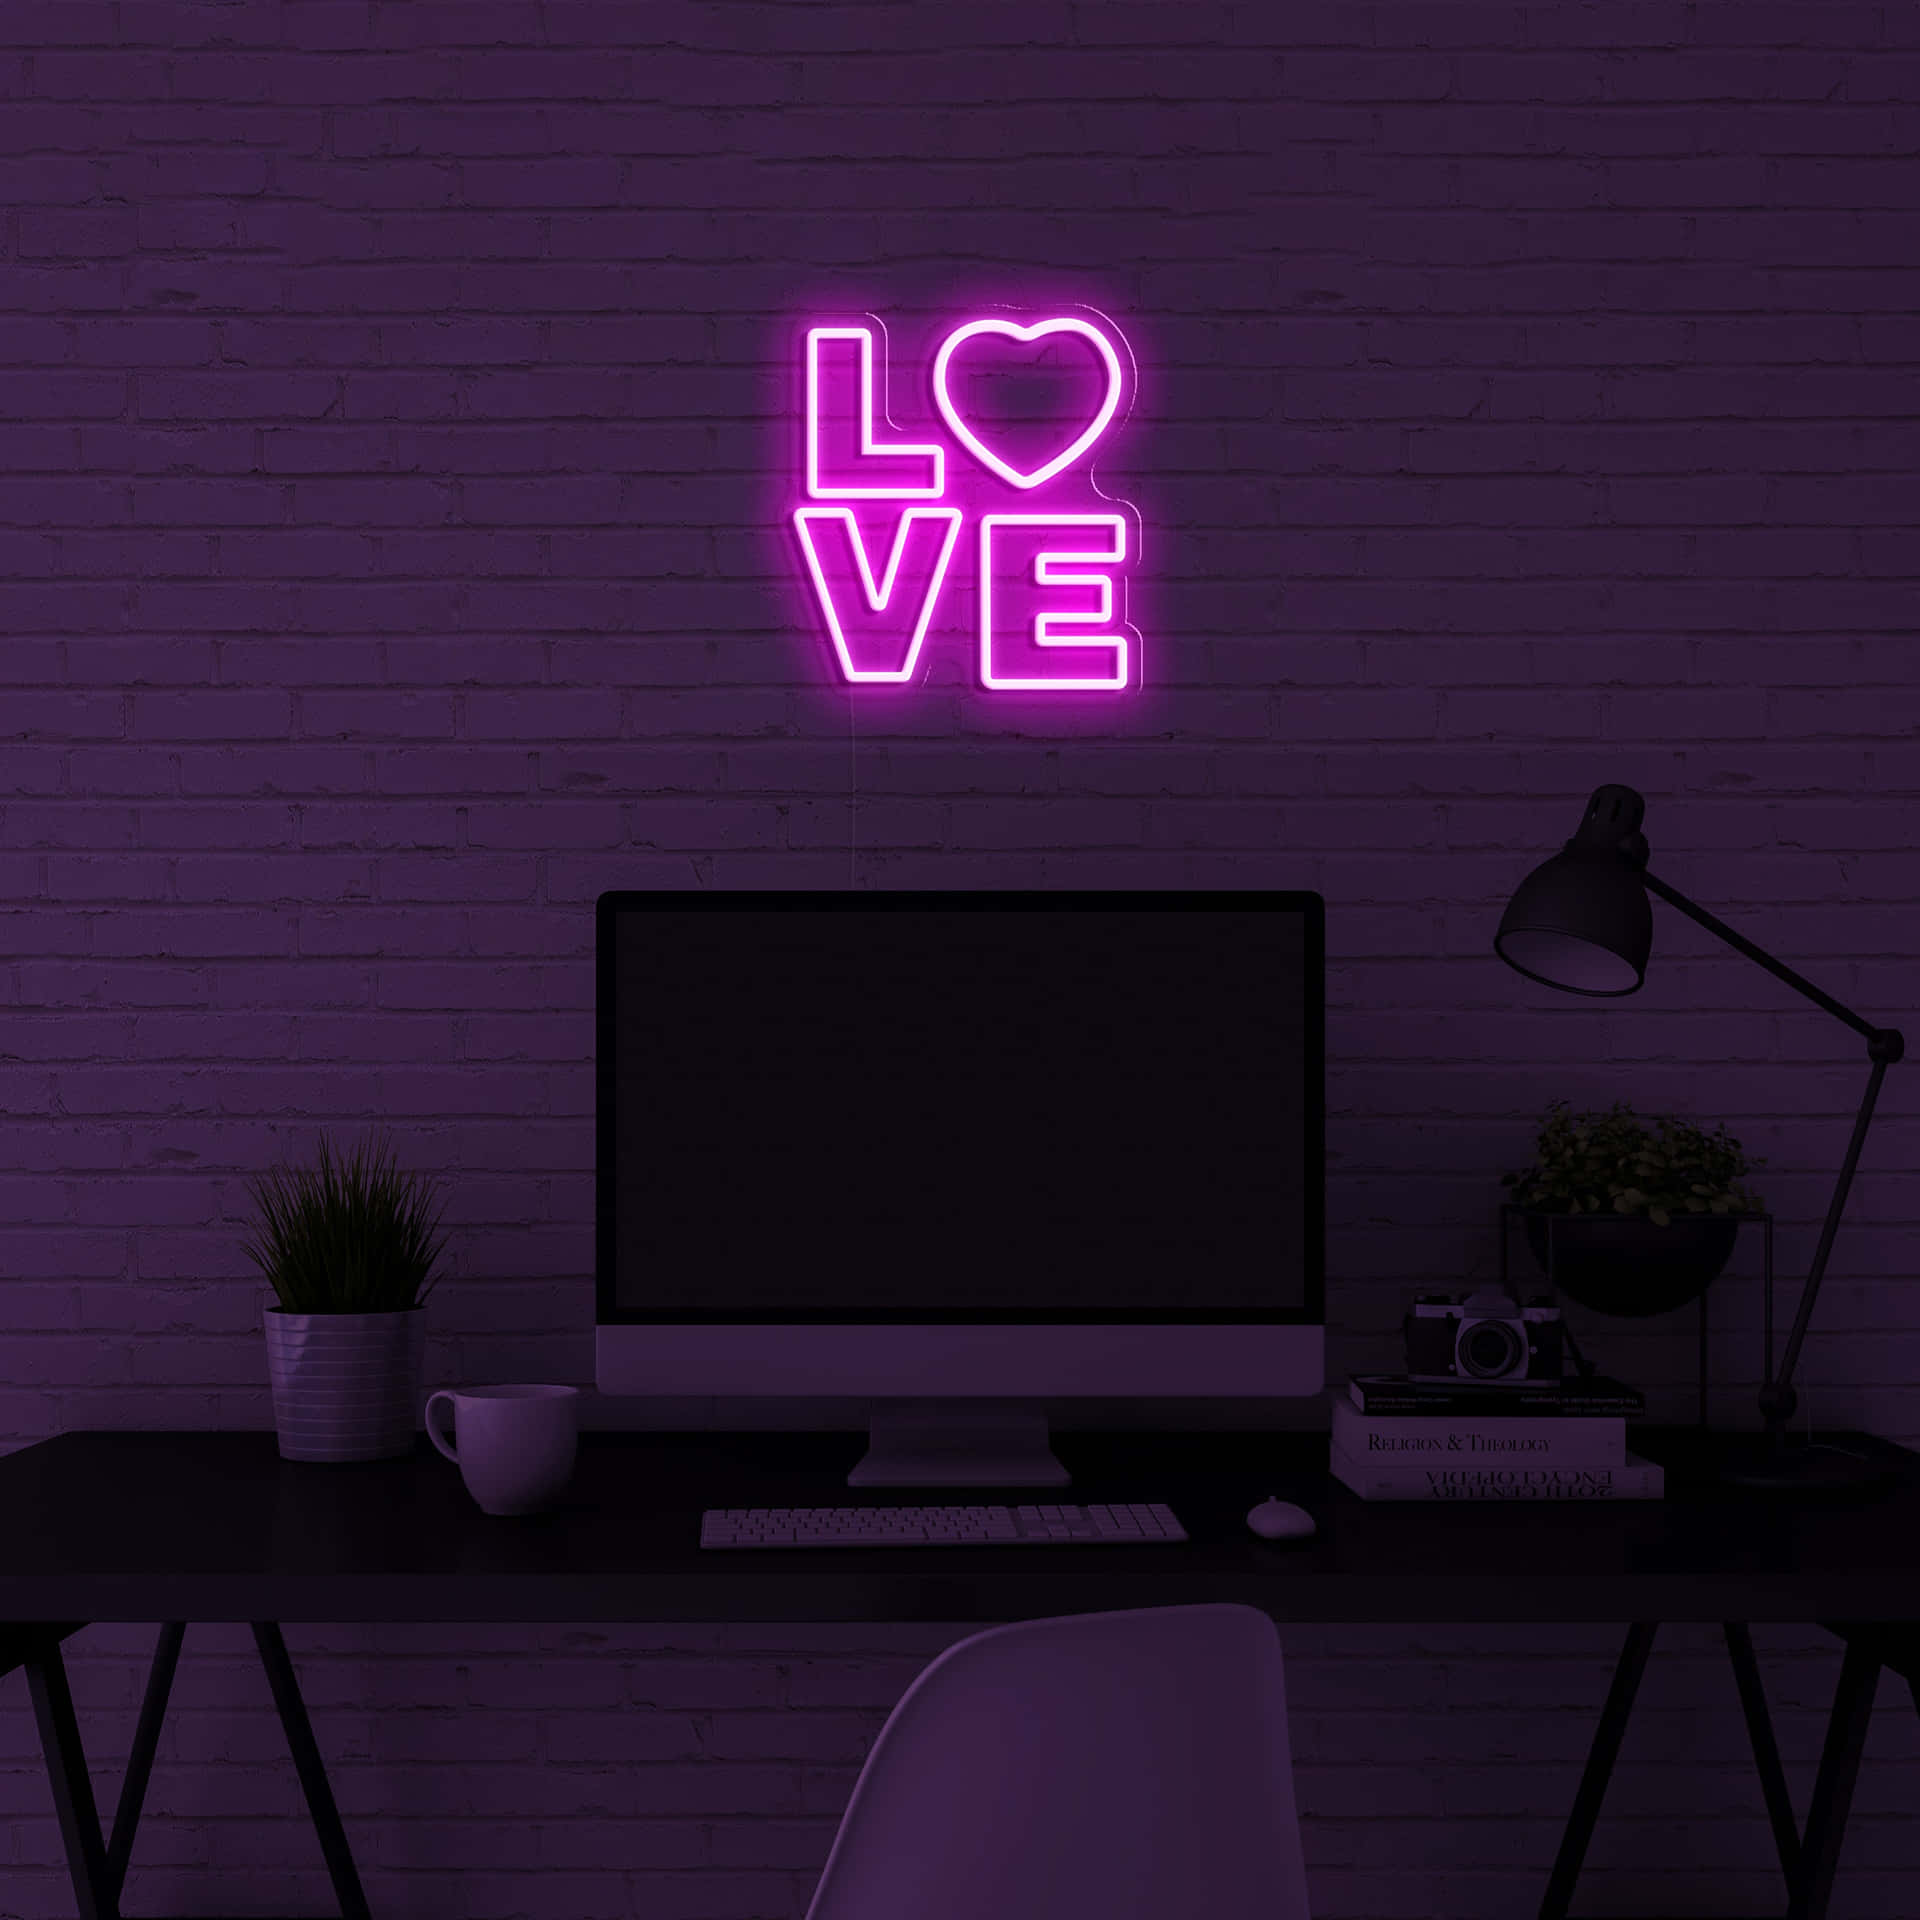 Njutav De Vackra Ljuseffekterna På Denna Purple Neon Aesthetic-dator. Wallpaper